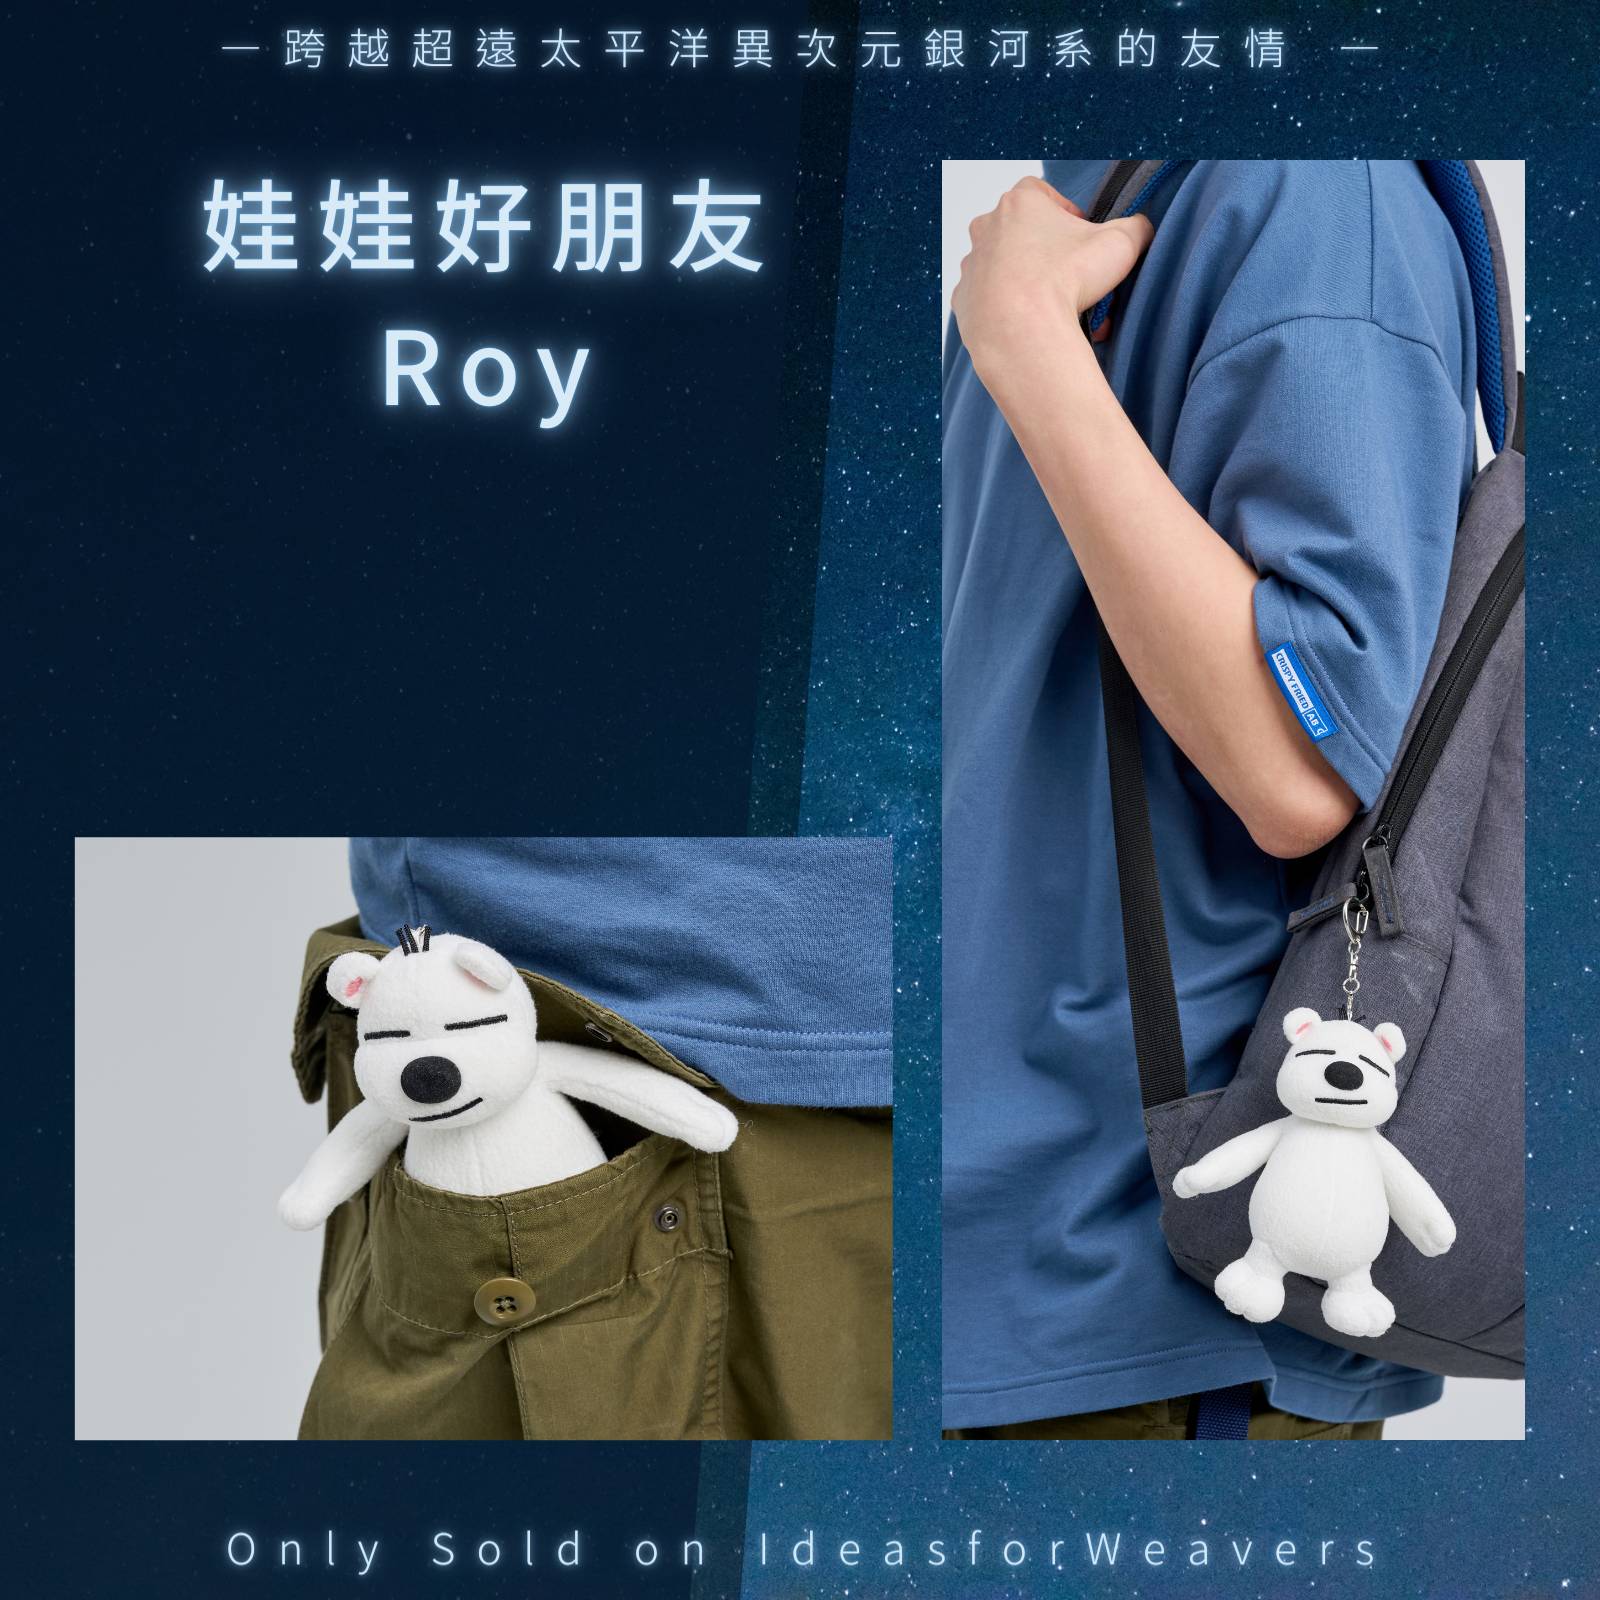 Roy娃娃_01